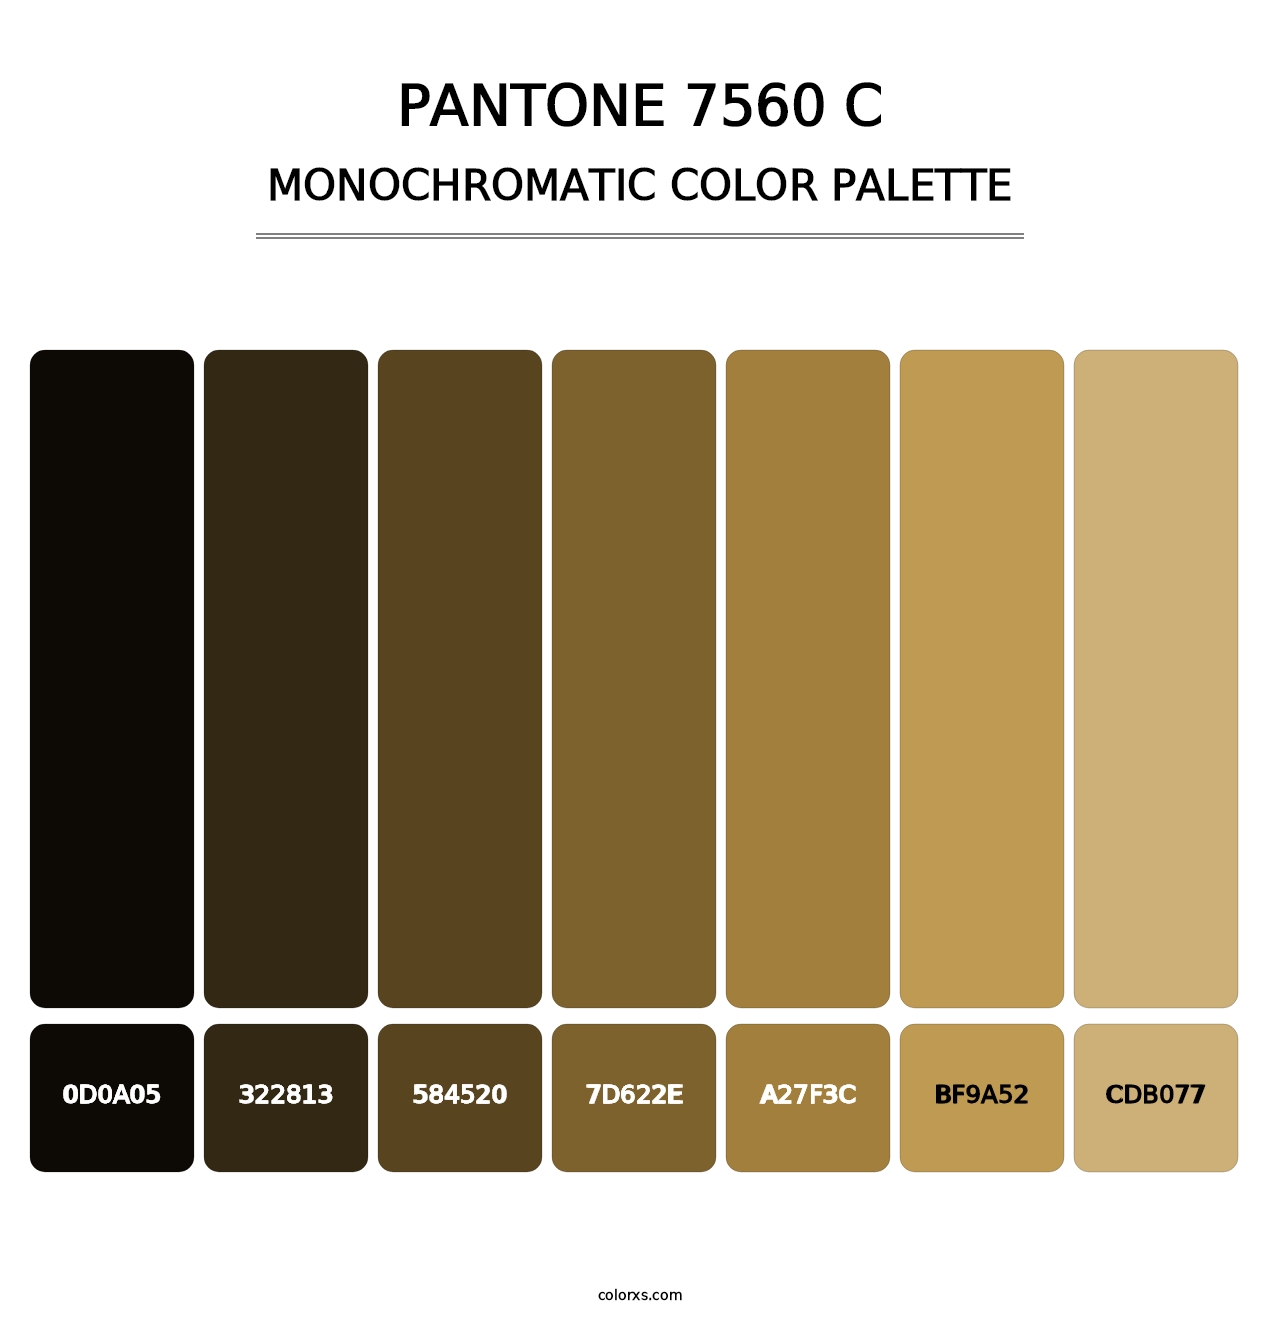 PANTONE 7560 C - Monochromatic Color Palette